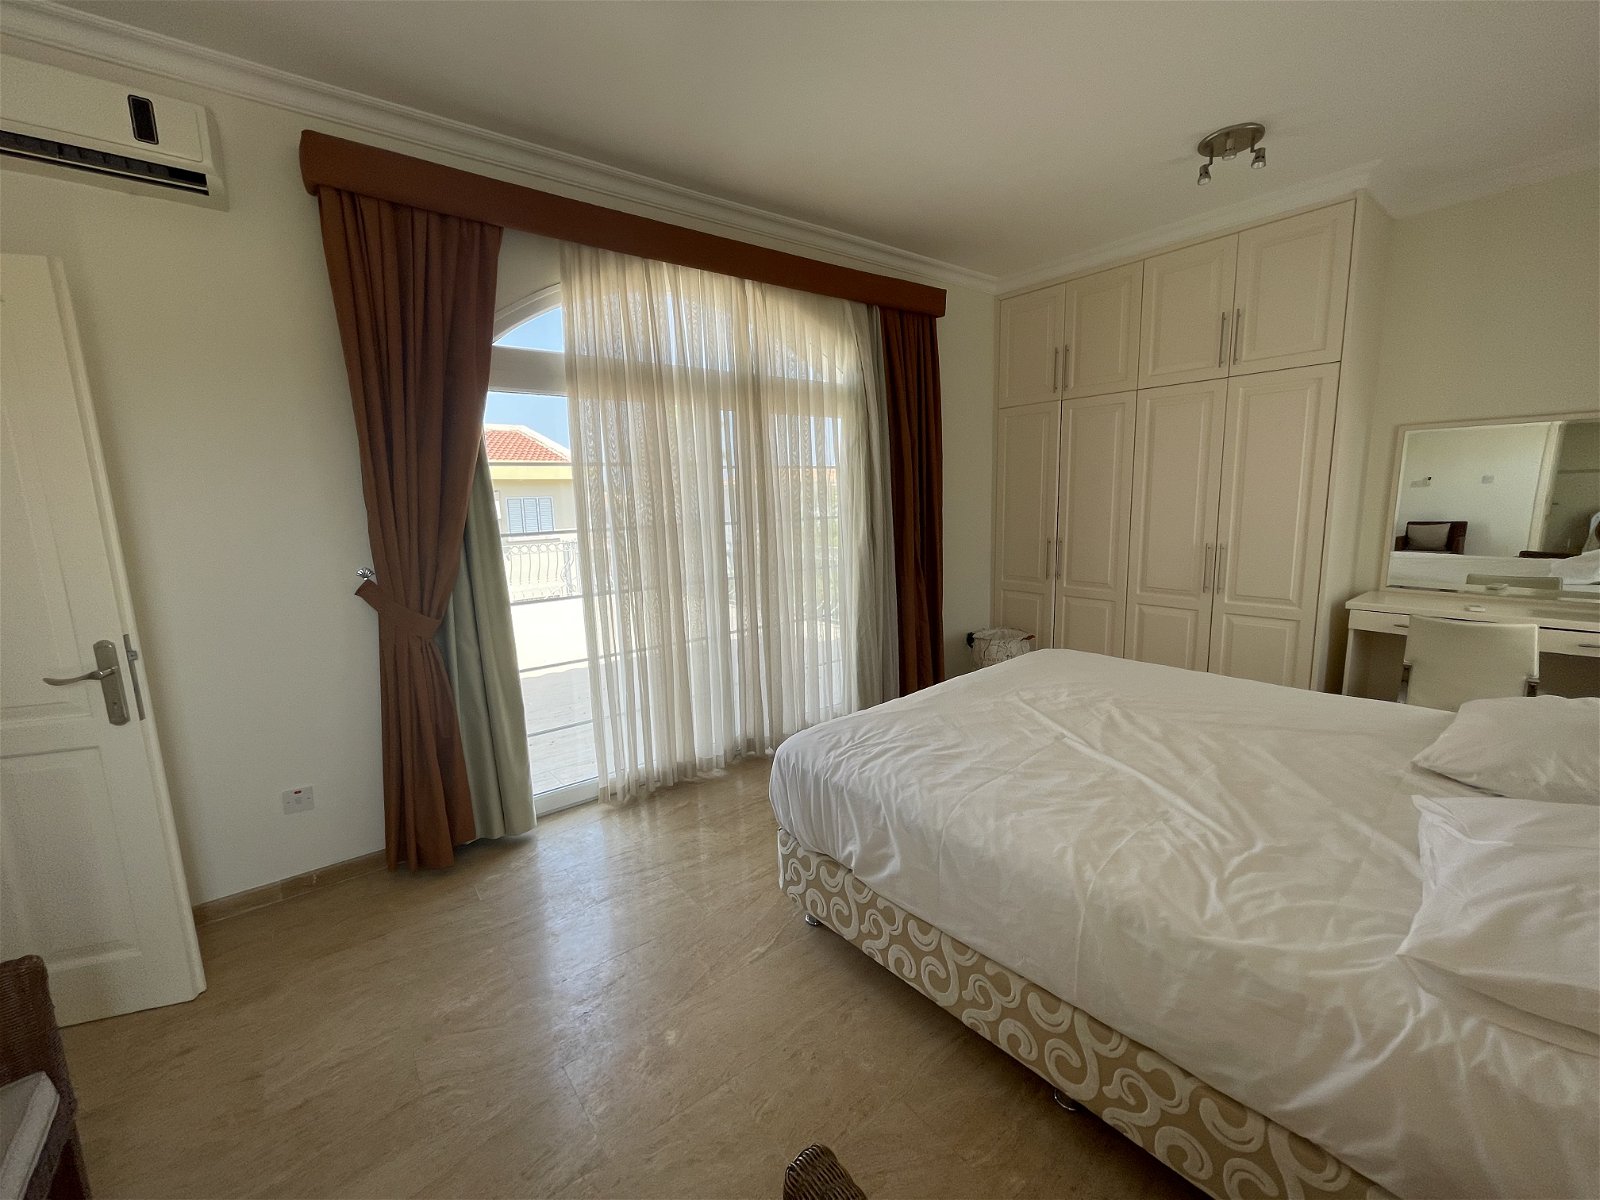 For Sale 3 +1 Turkish Deeded Villa in Karaoglanoglu Kyrenia-7201d551-e9b4-4b50-adb0-6a5b797964b1